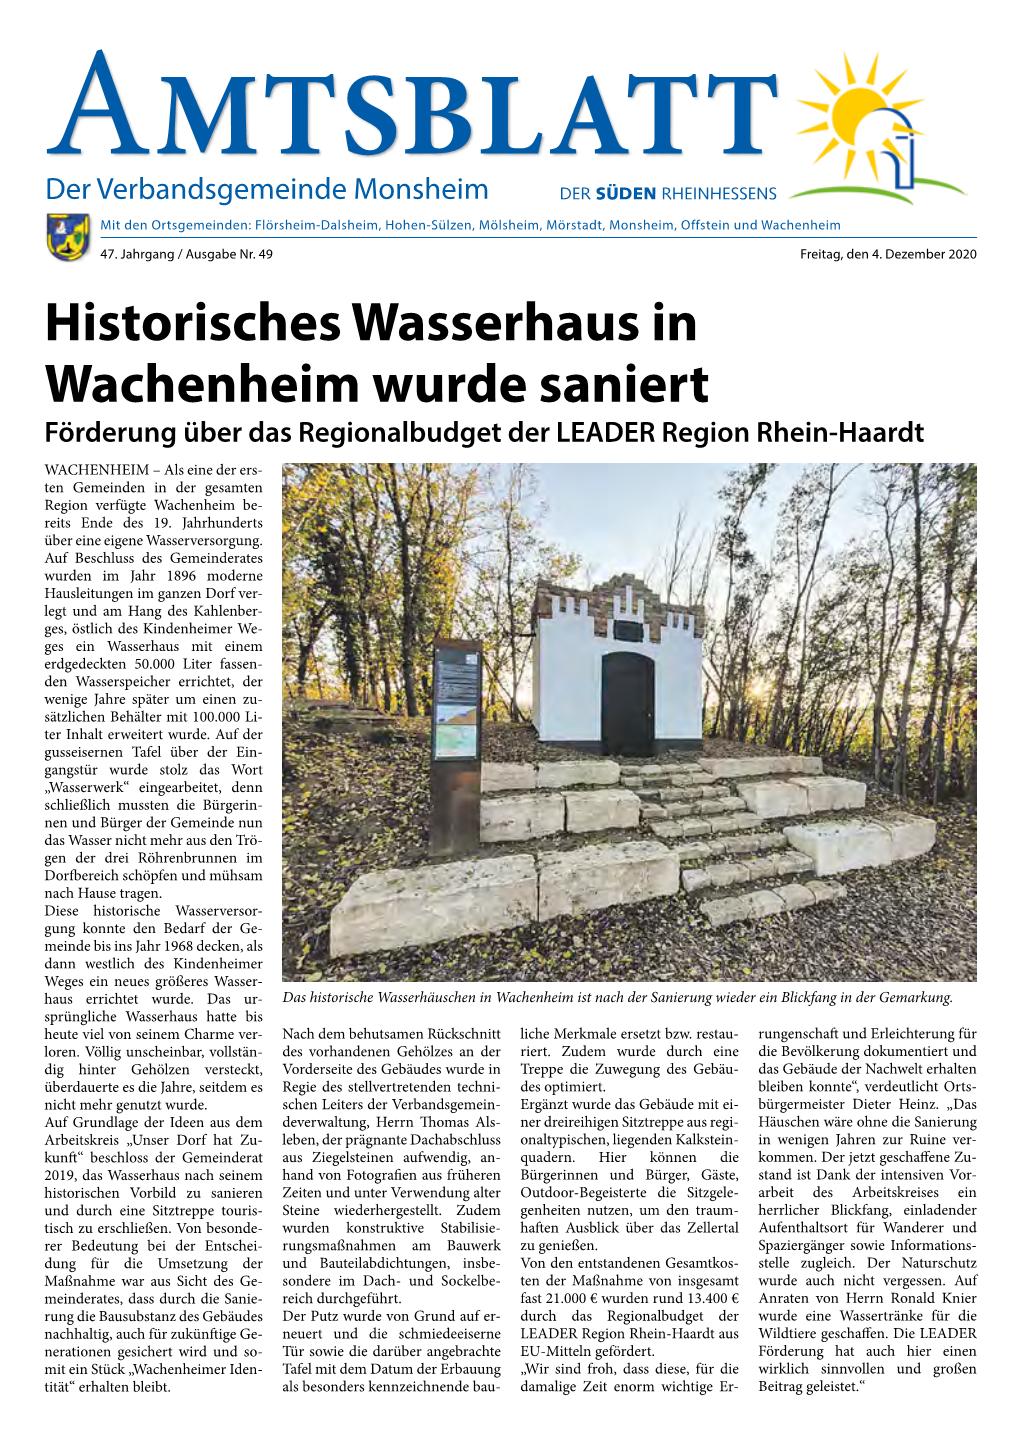 Historisches Wasserhaus in Wachenheim Wurde Saniert Förderung Über Das Regionalbudget Der LEADER Region Rhein-Haardt